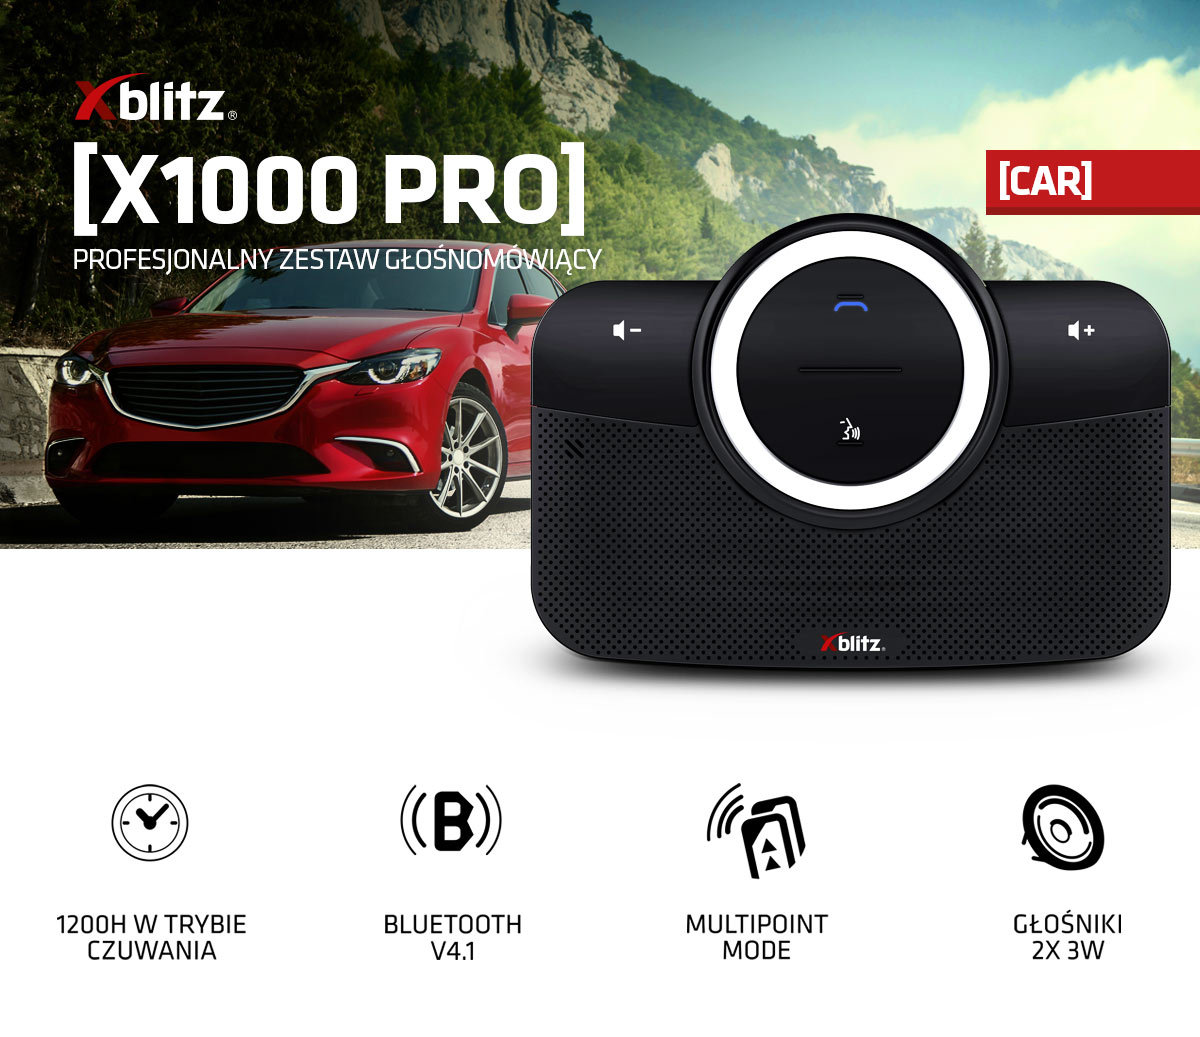 Zestaw głośnomówiący Xblitz X1000 Professional Bluetooth na tle samochodu wraz z opisem specyfikacji